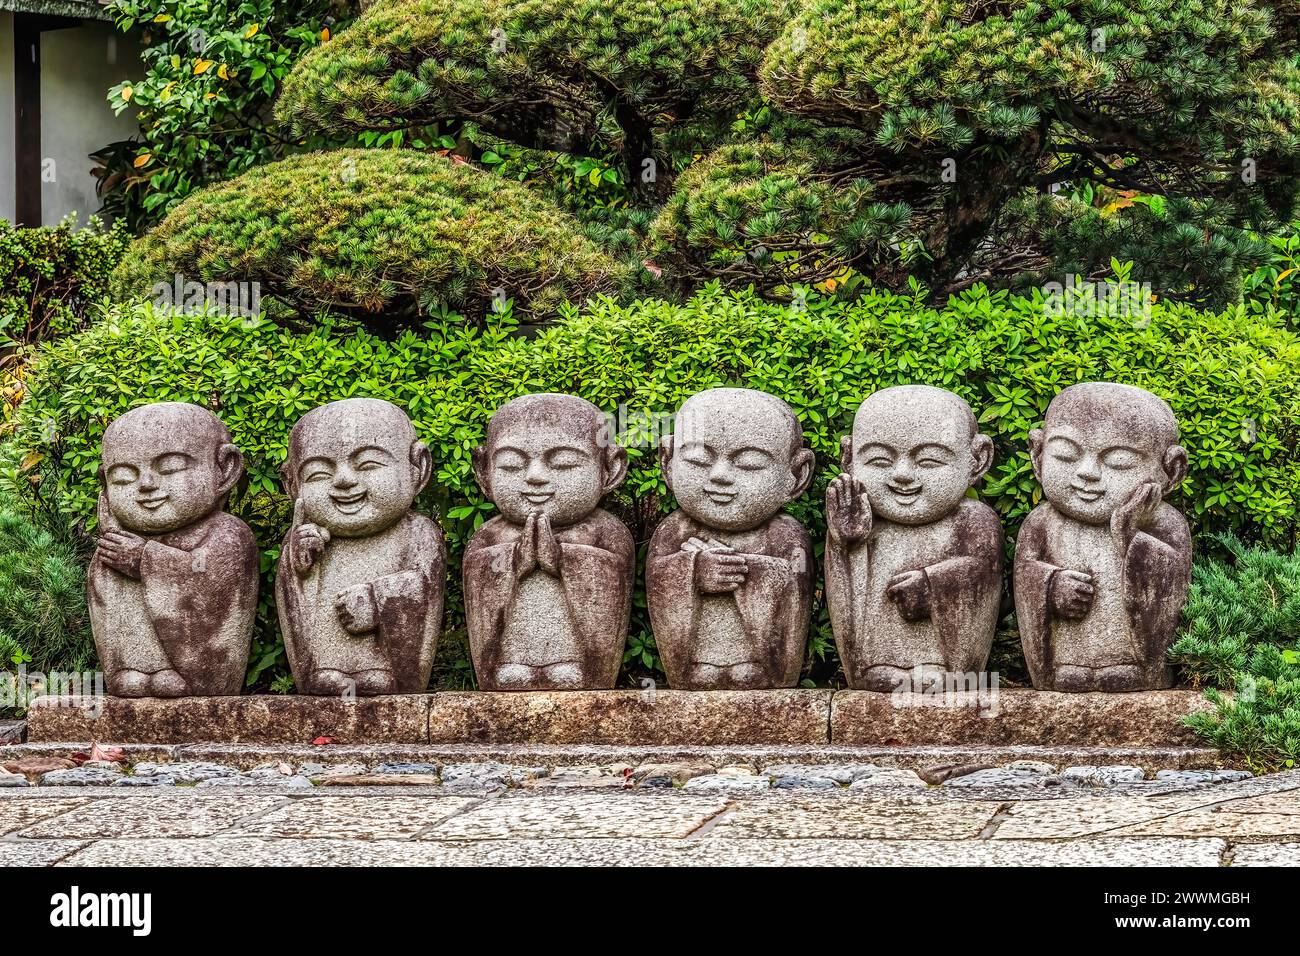 Jizo Child Buddha Statues Tofuku-Ji Buddhist Temple Kyoto Japan Stock Photo